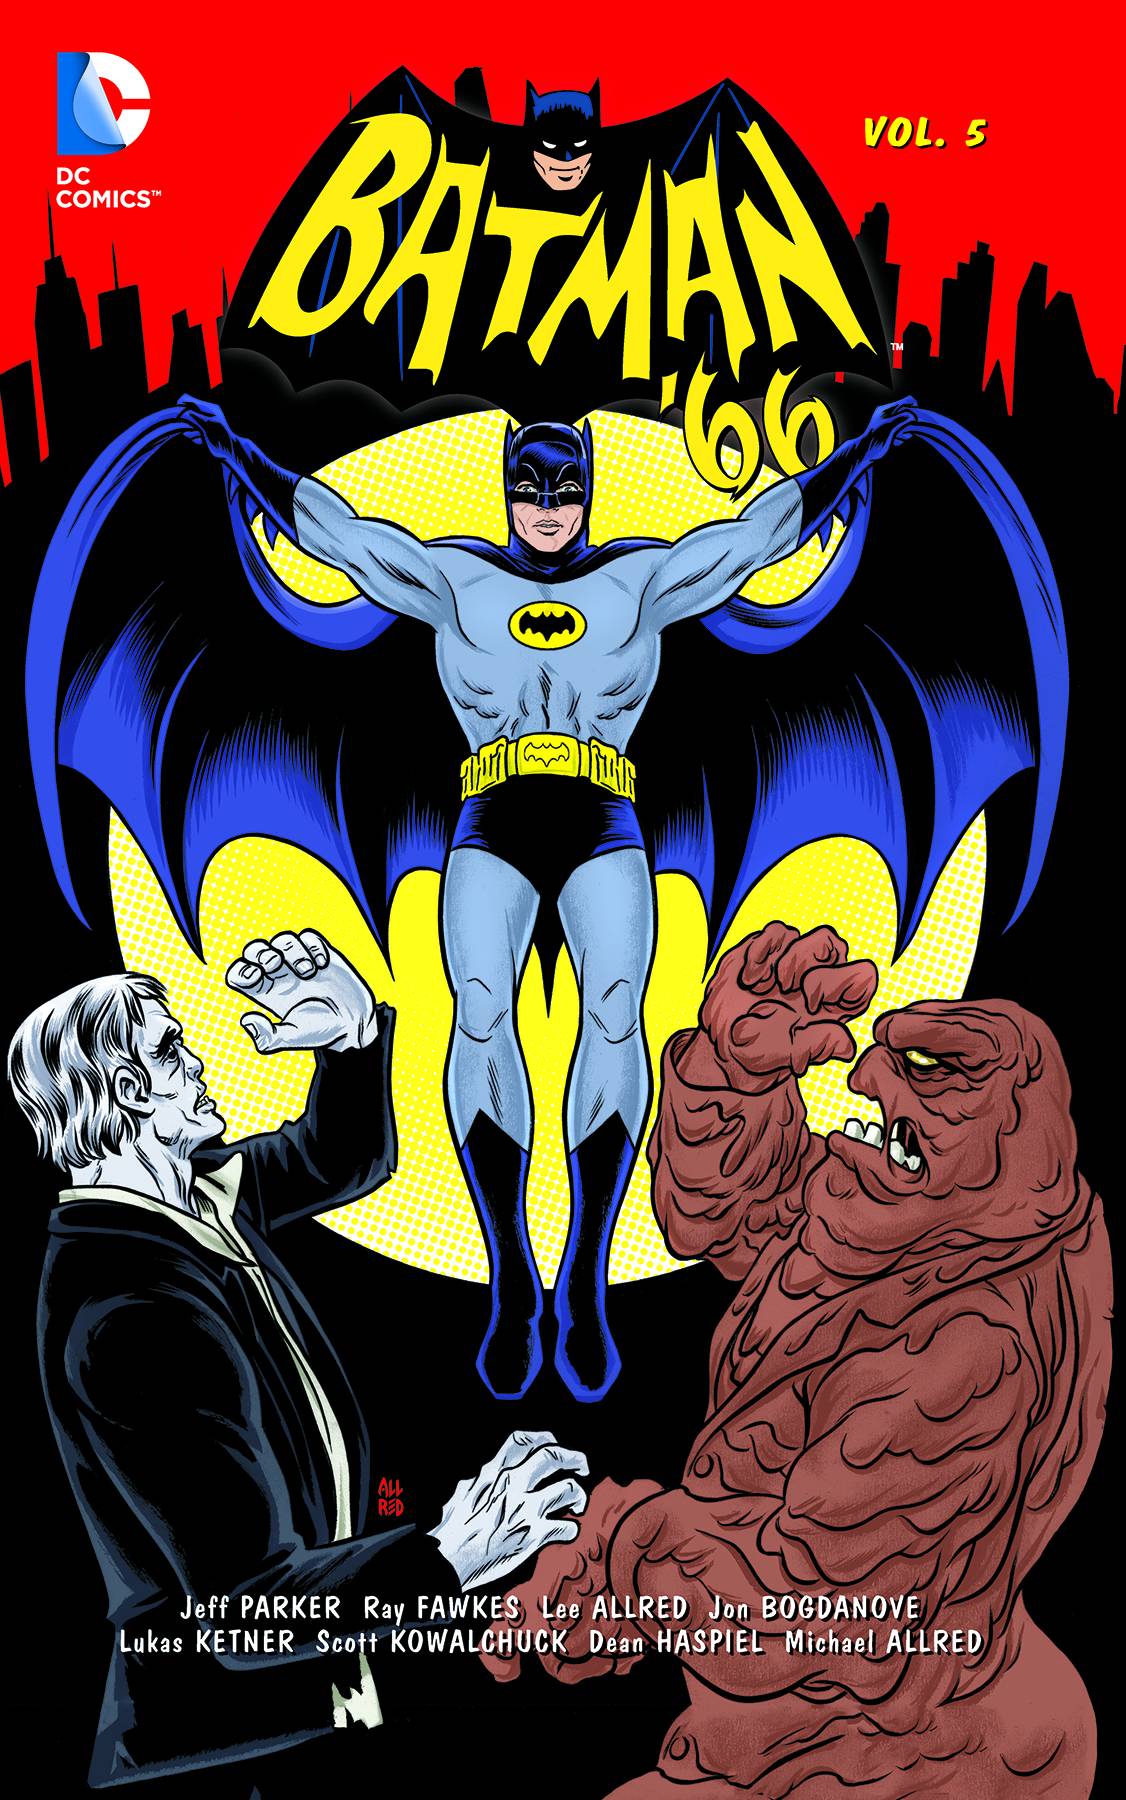 Batman 66 Graphic Novel Volume 5